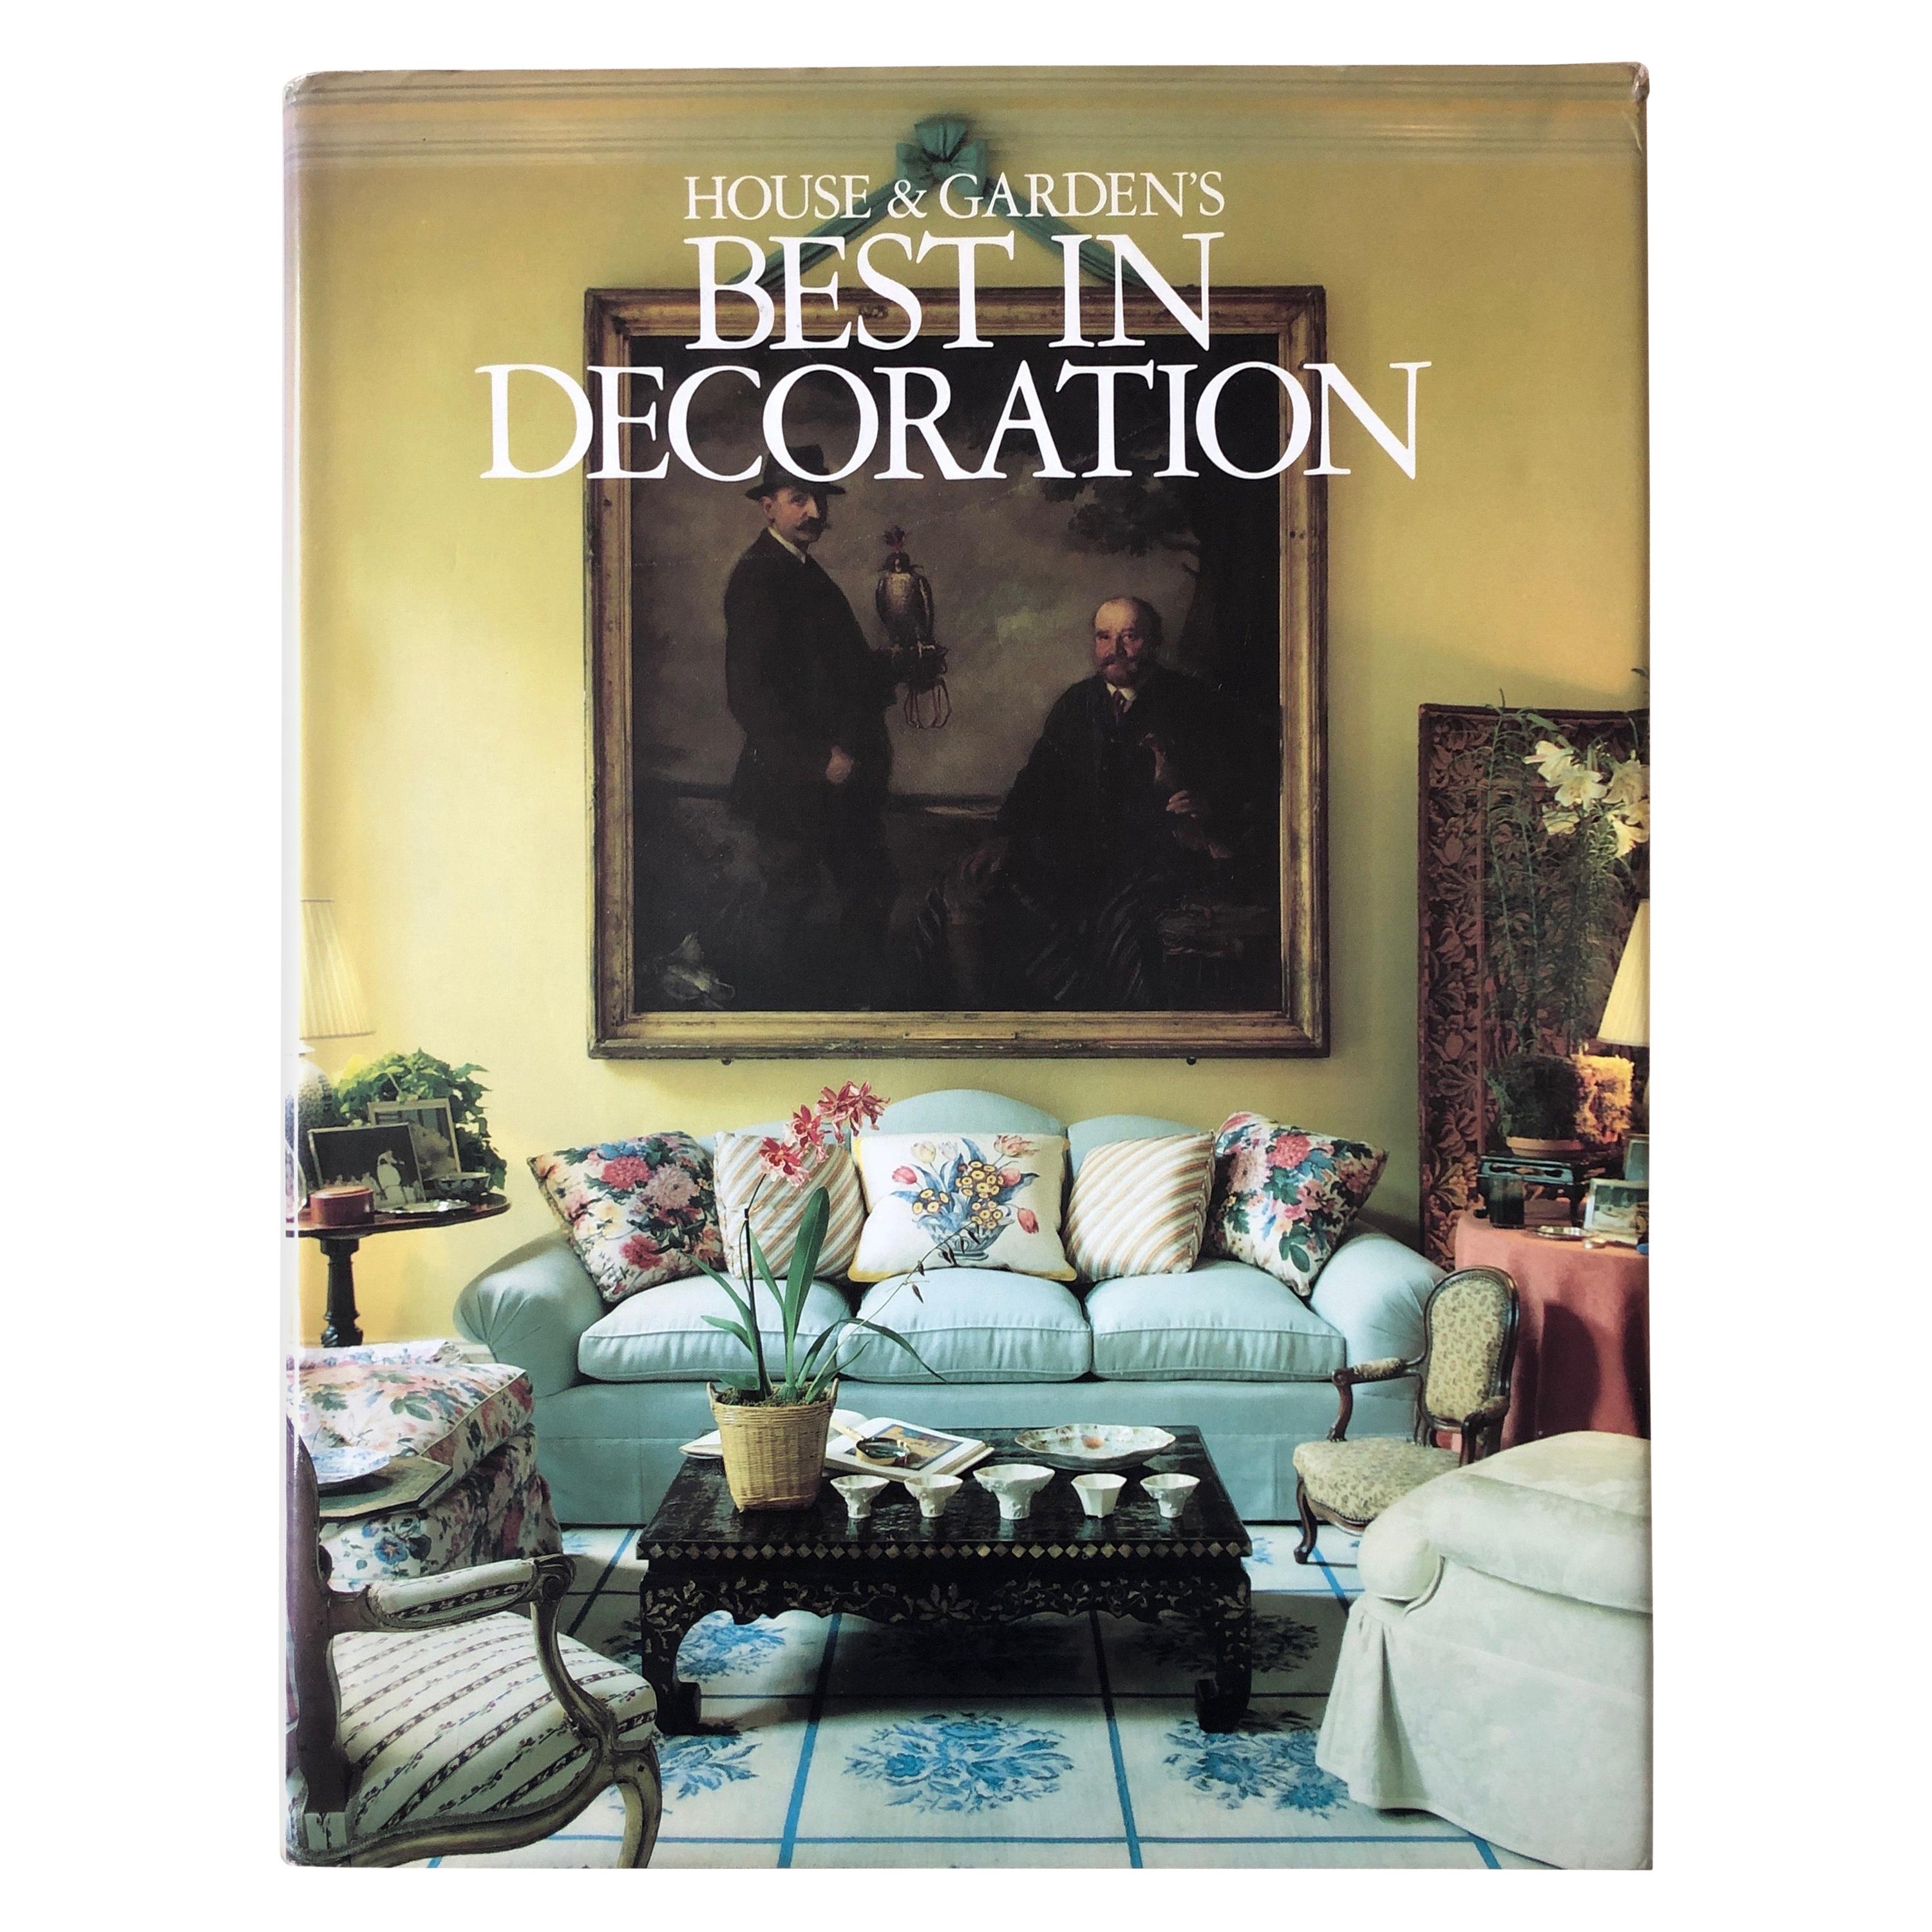 Best in Decoration Book by House & Garden Magazine